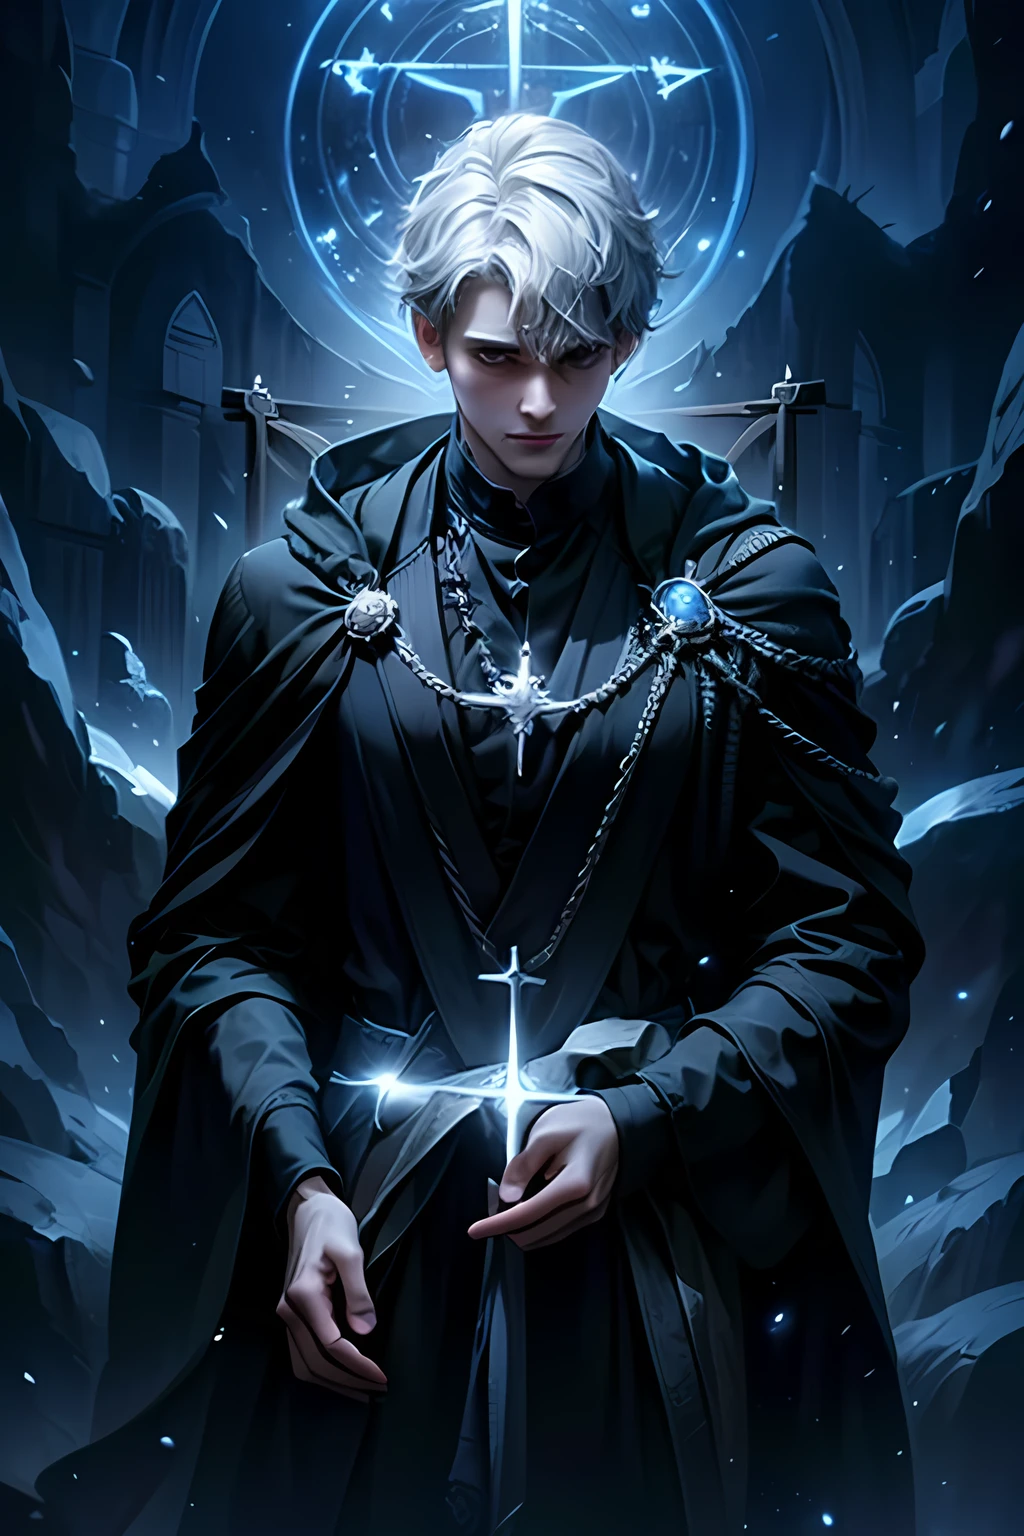 (beste Qualität,highres),
ein 28-jähriger Mann mit kurzen silbernen Haaren,
Exorzist Magier,
im England des 19. Jahrhunderts,
Trägt einen dunklen Umhang,
Kreuze tragen,
umgeben von Pentagrammen,
in einer dunklen und mysteriösen Atmosphäre.